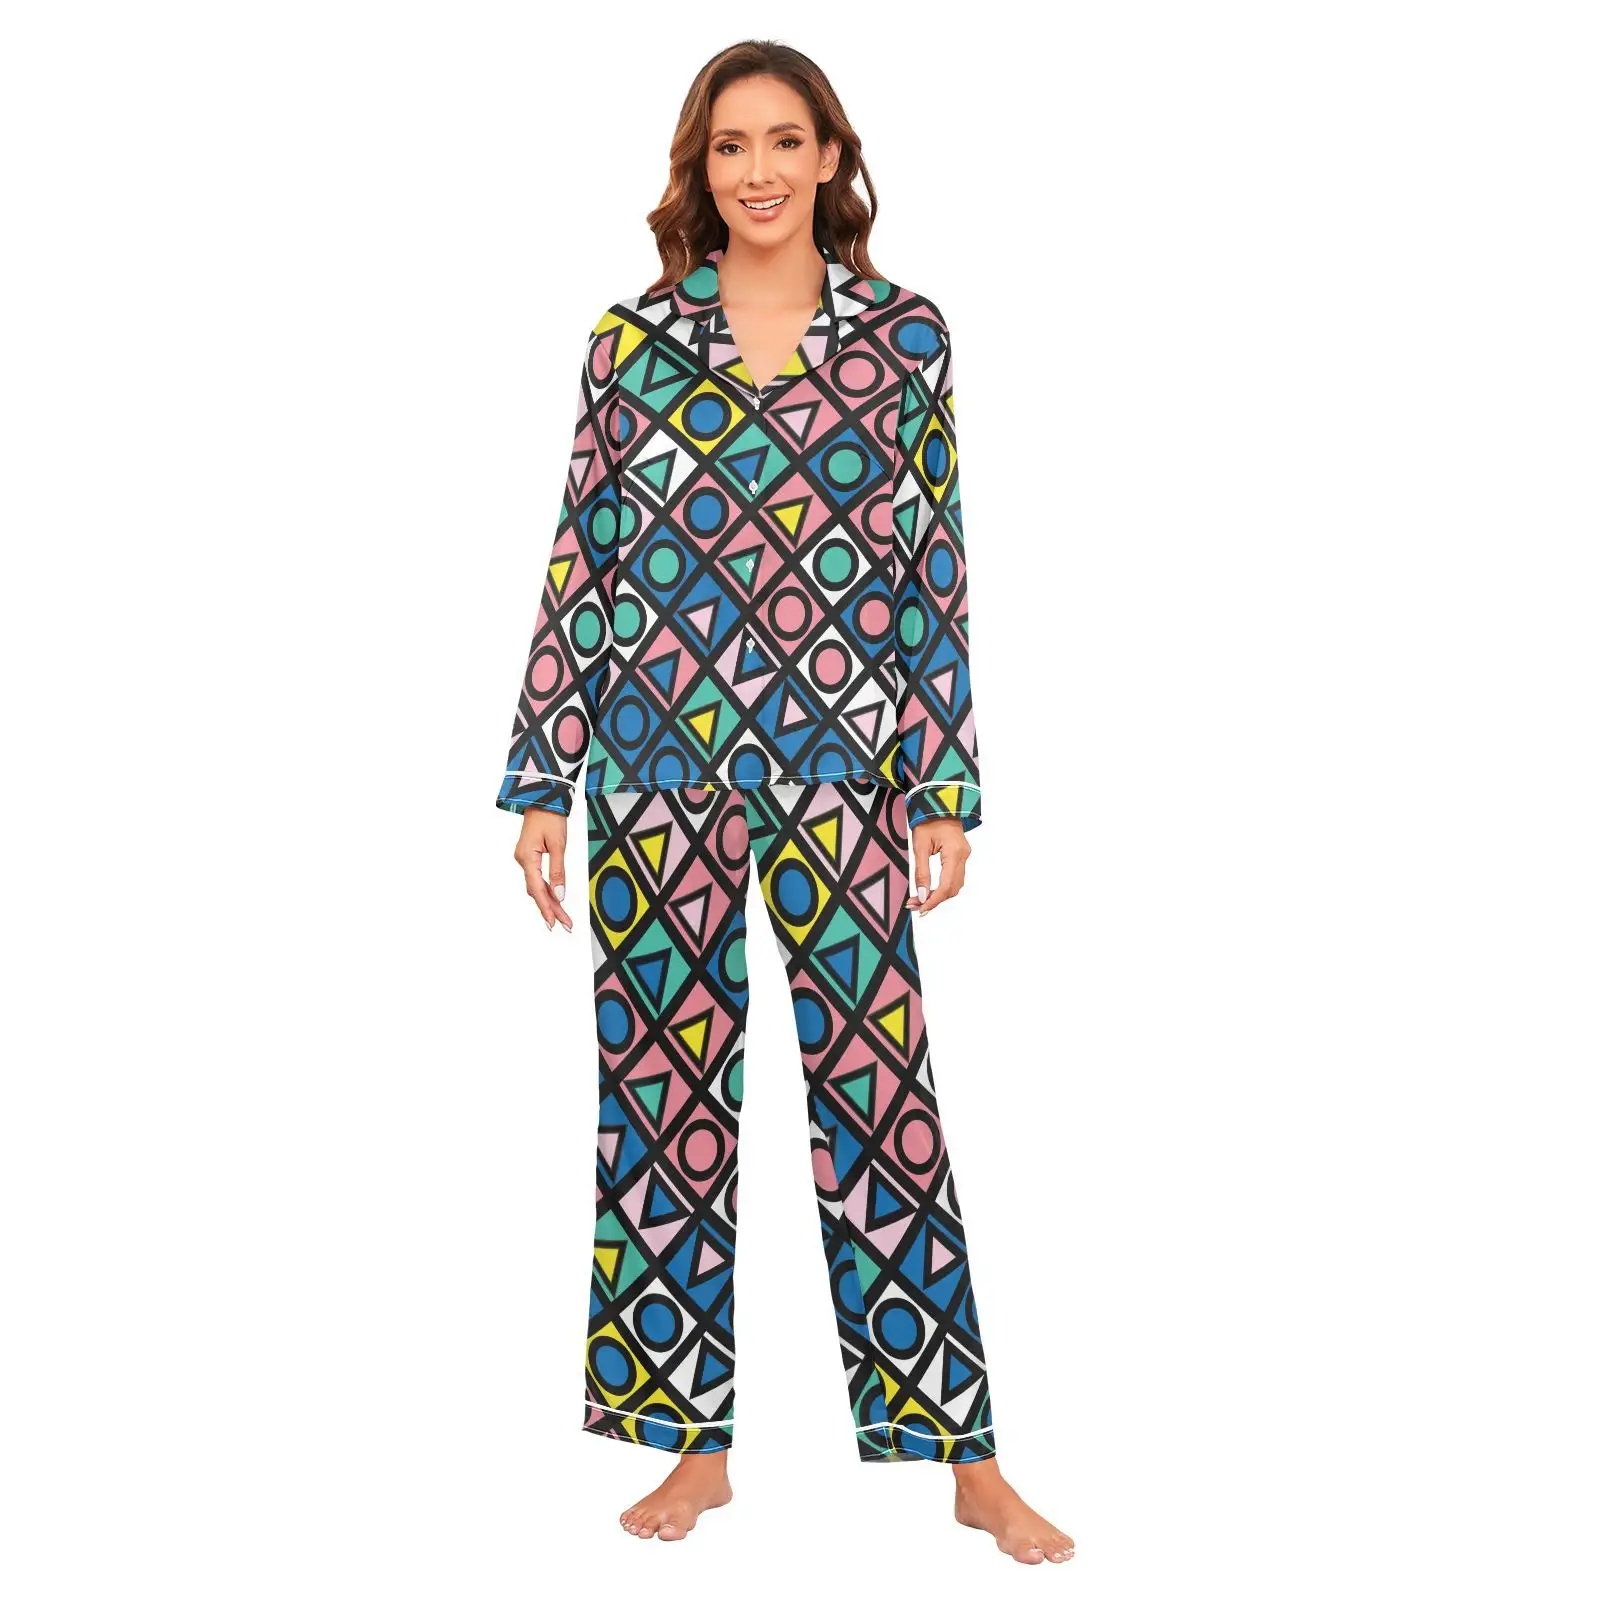 Venta al por mayor de dos piezas de ropa de ocio Casual señoras pijamas trajes para niñas mujeres pijamas conjuntos